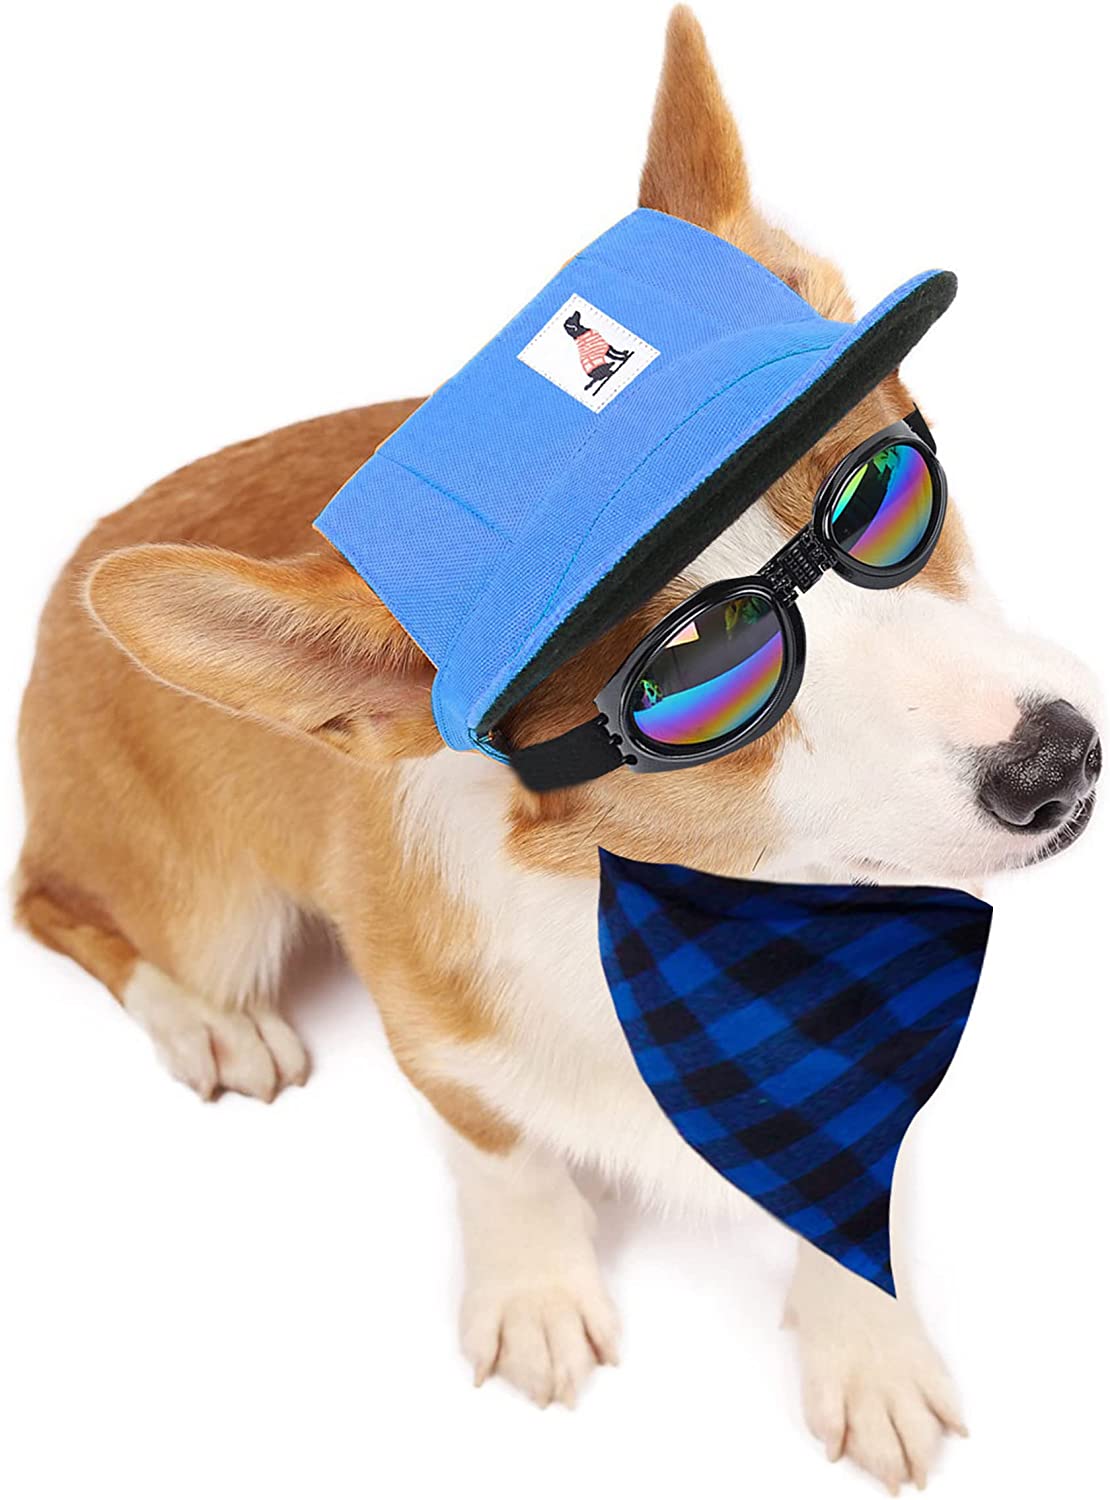  ترکیب کلاه عینکی بانداناس سگ 8 عددی - شامل کلاه های حیوان خانگی با طرح چهارخانه کلاسیک است که در چهار سبک توری قرمز و مشکی، توری مشکی و سفید، توری سبز و مشکی، و آبی و مشکی موجود است